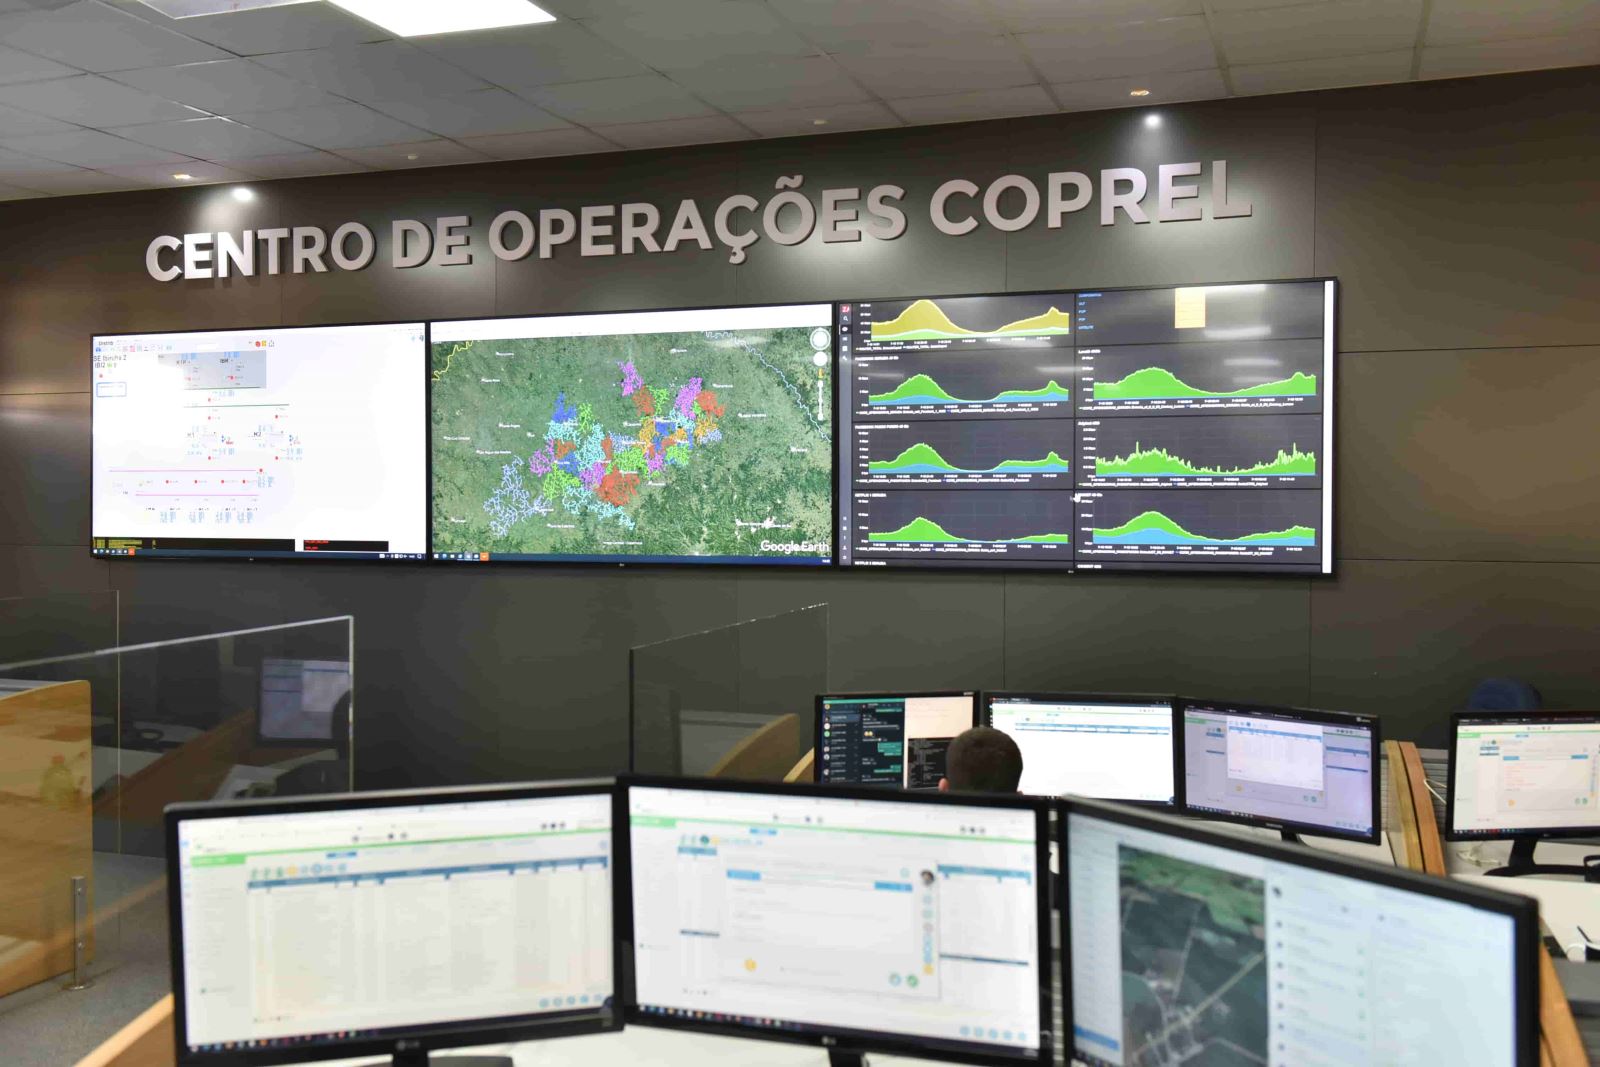 Centro de Operações da Coprel, com múltiplas telas de acompanhamento das operações de geração e distribuição de energia elétrica da Coprel